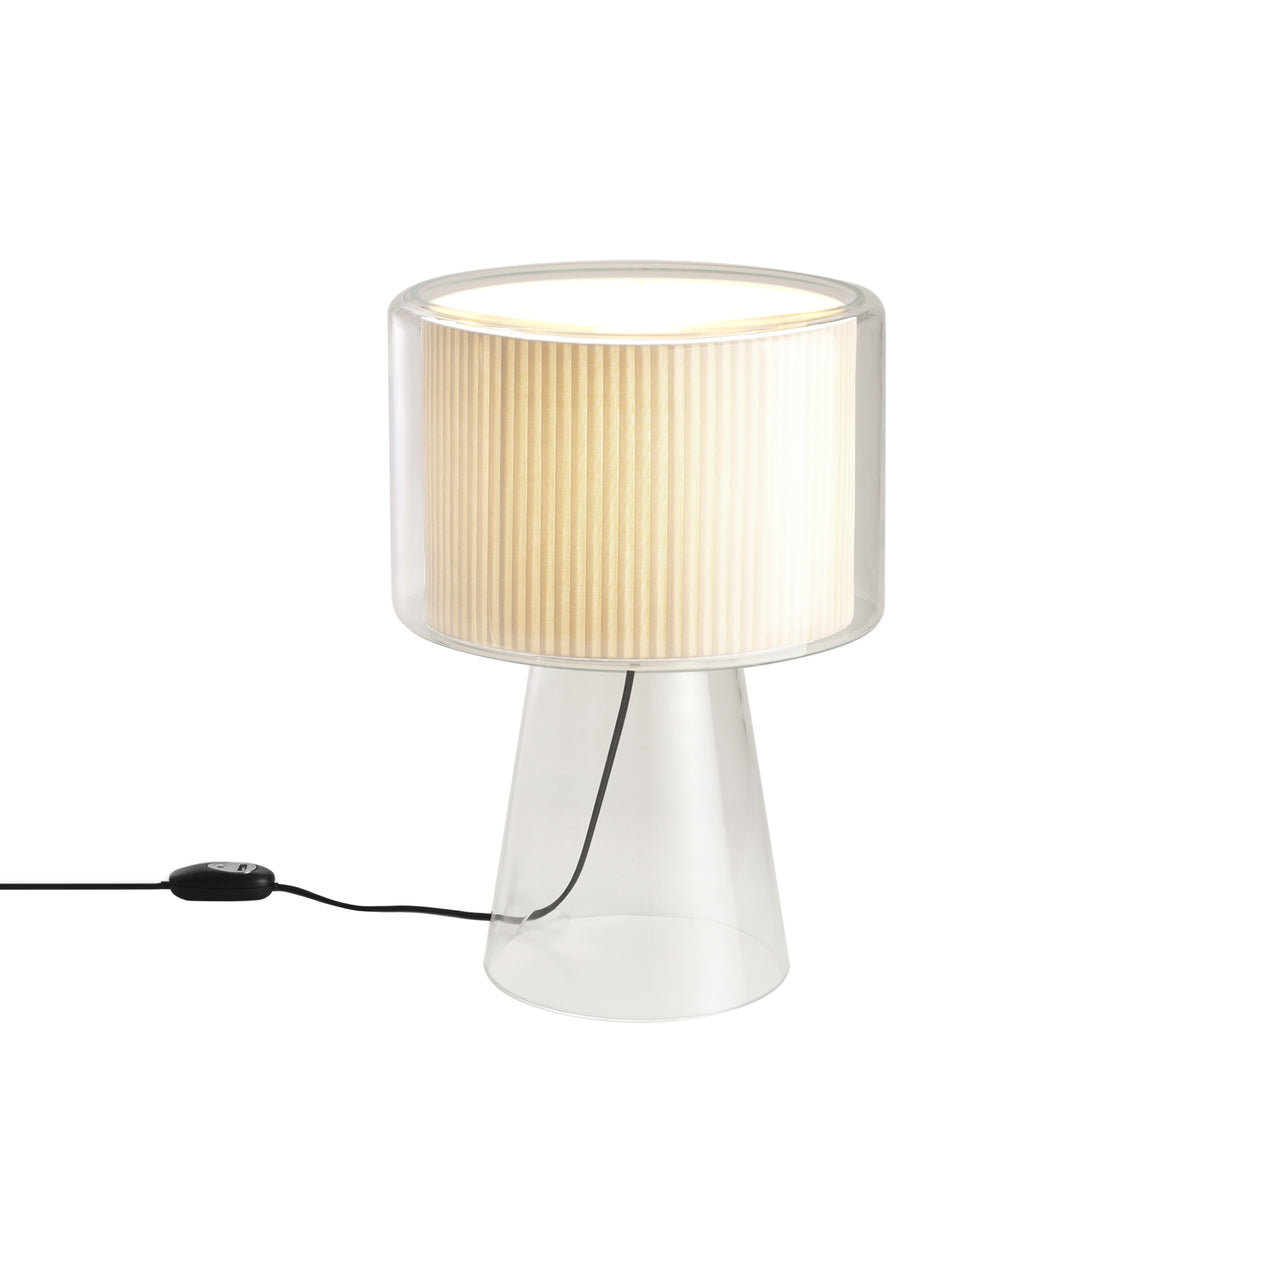 Mercer Table Lamp: Large - 14.9